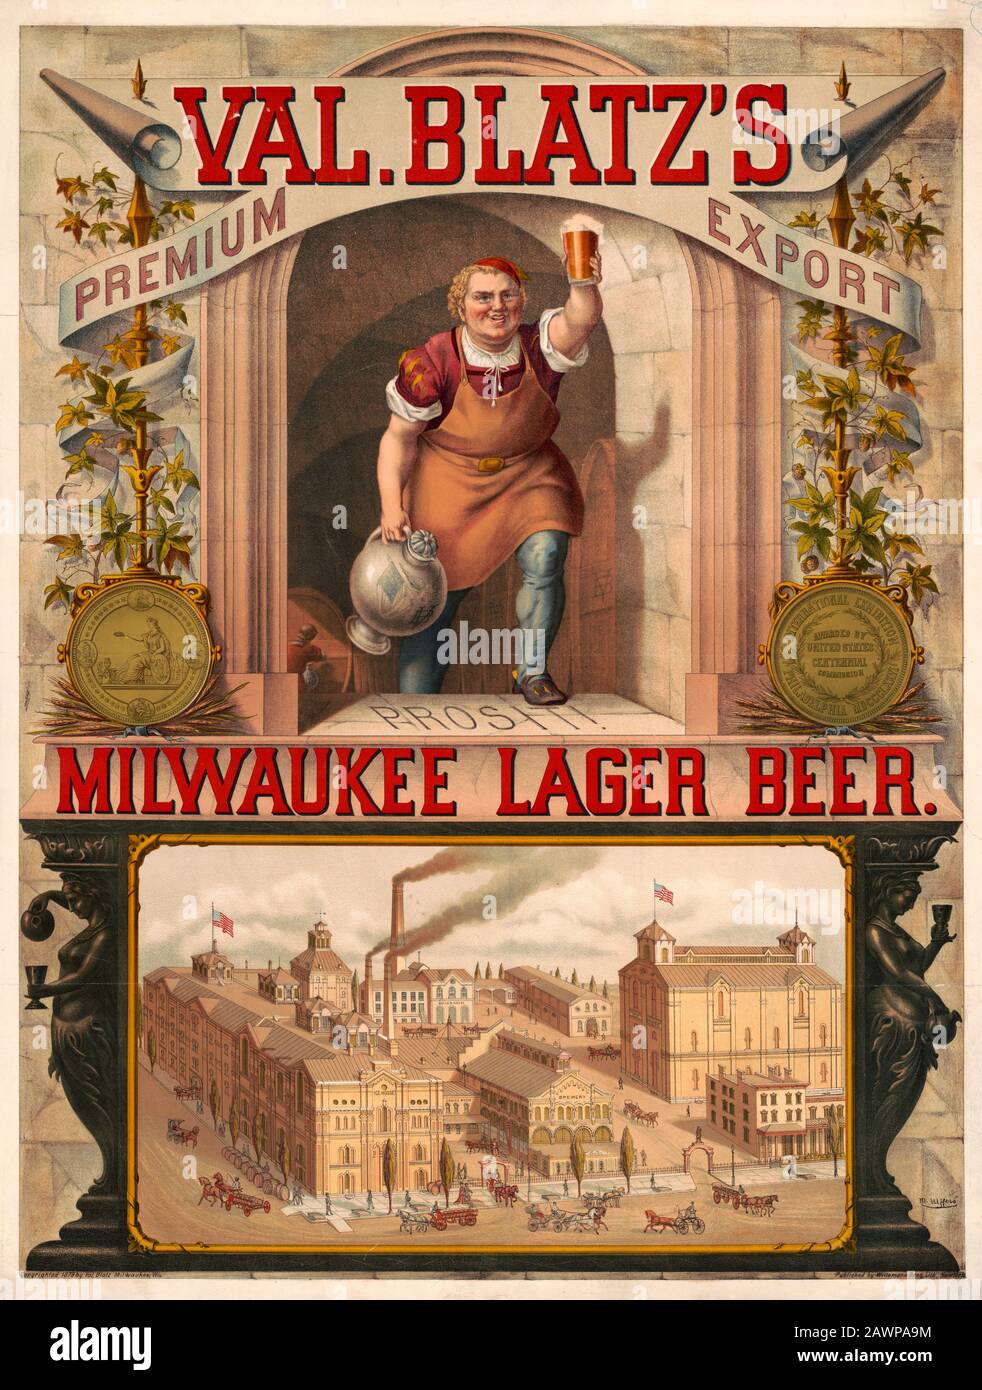 Val. Esportazione di Blatz premium, Milwaukee lager beer / M. Ulffers. Stampa di pubblicità per Val. La birra Milwaukee Lager di Blatz mostra un birraio che innalza un bicchiere di birra e una vista dall'alto della birreria. Luglio 1879 Foto Stock